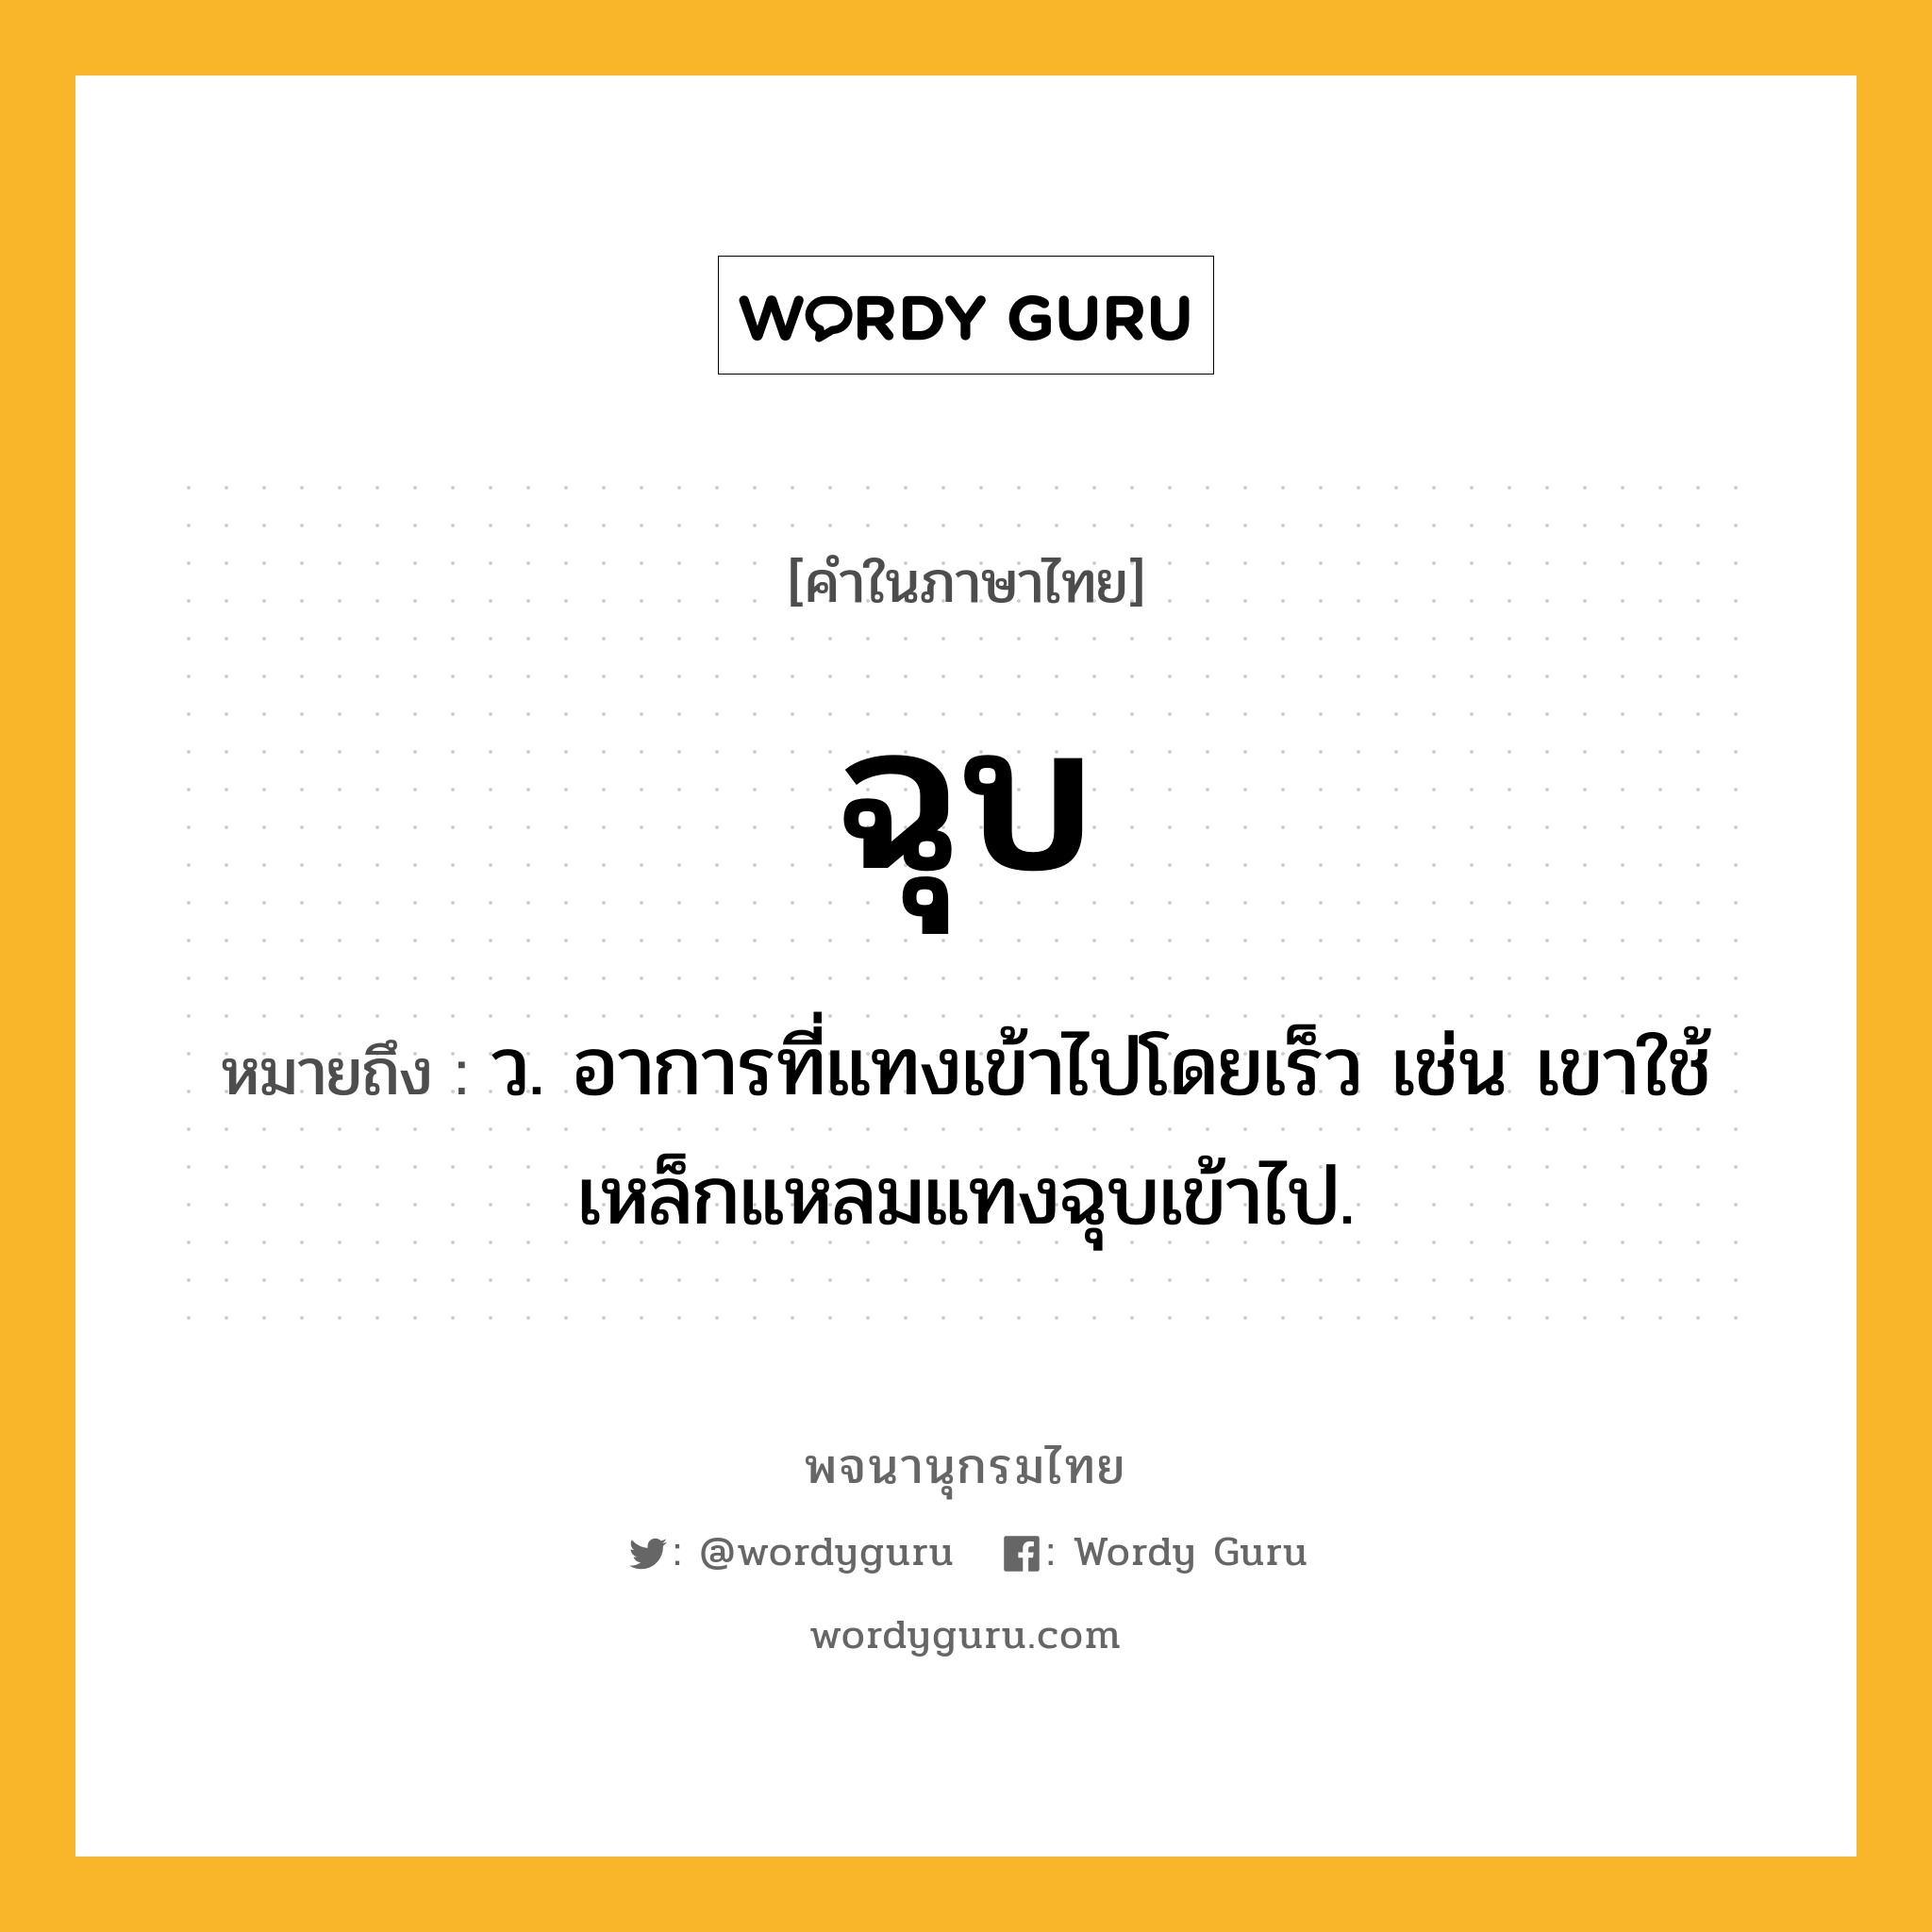 ฉุบ หมายถึงอะไร?, คำในภาษาไทย ฉุบ หมายถึง ว. อาการที่แทงเข้าไปโดยเร็ว เช่น เขาใช้เหล็กแหลมแทงฉุบเข้าไป.